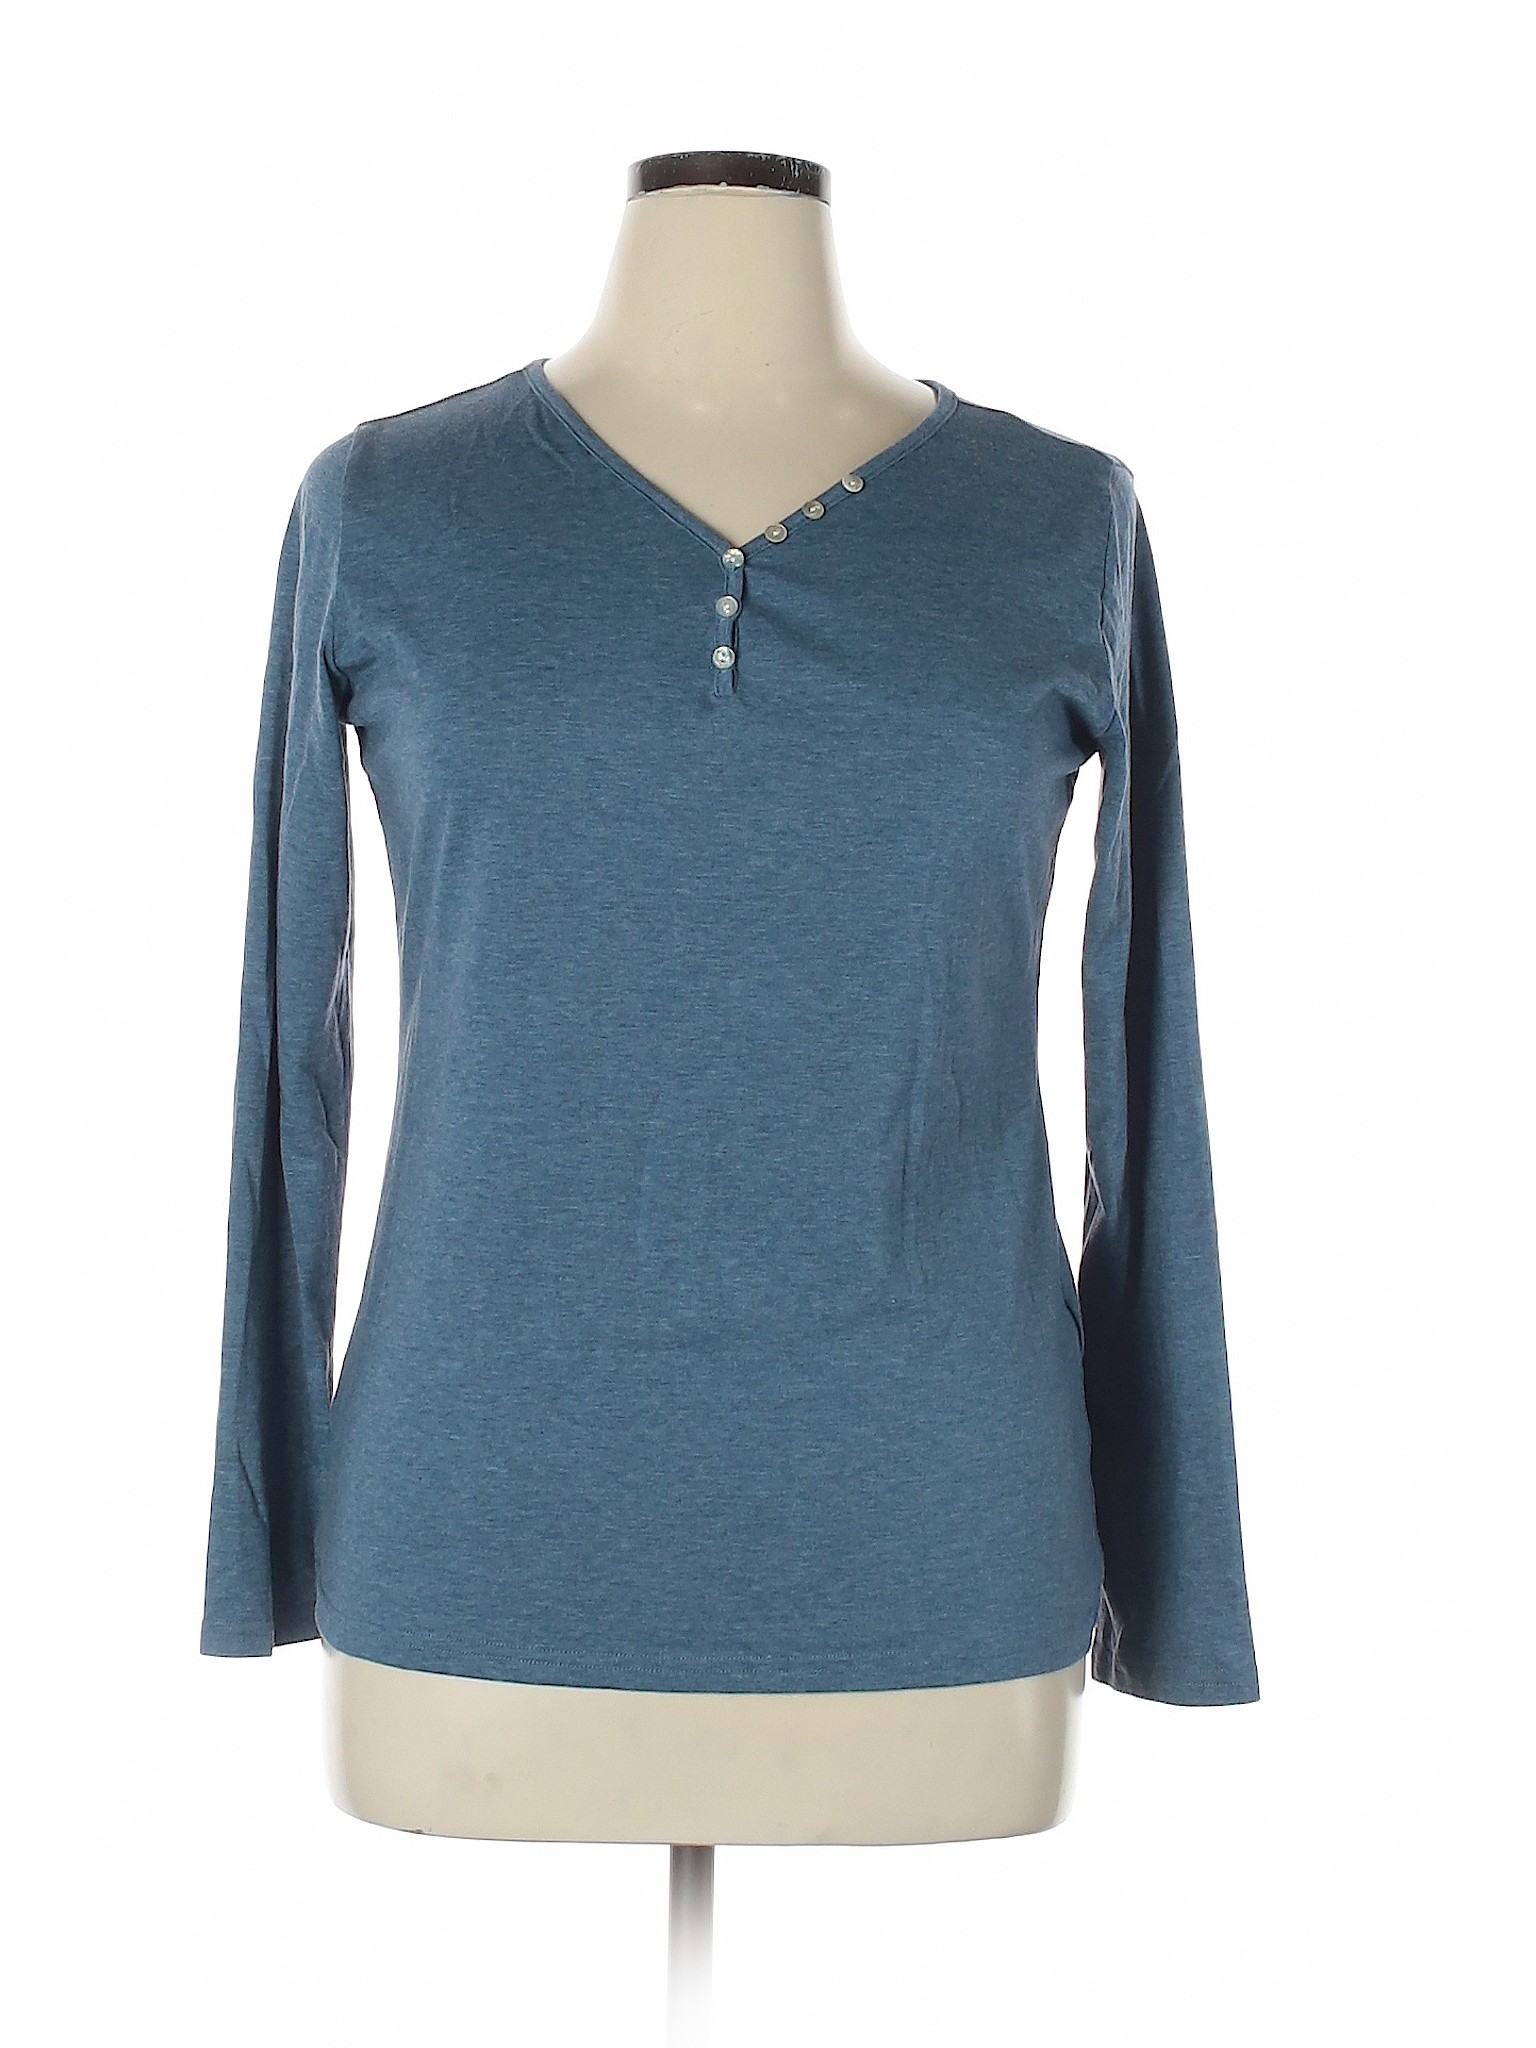 Unbranded Women Blue Long Sleeve Henley XL | eBay